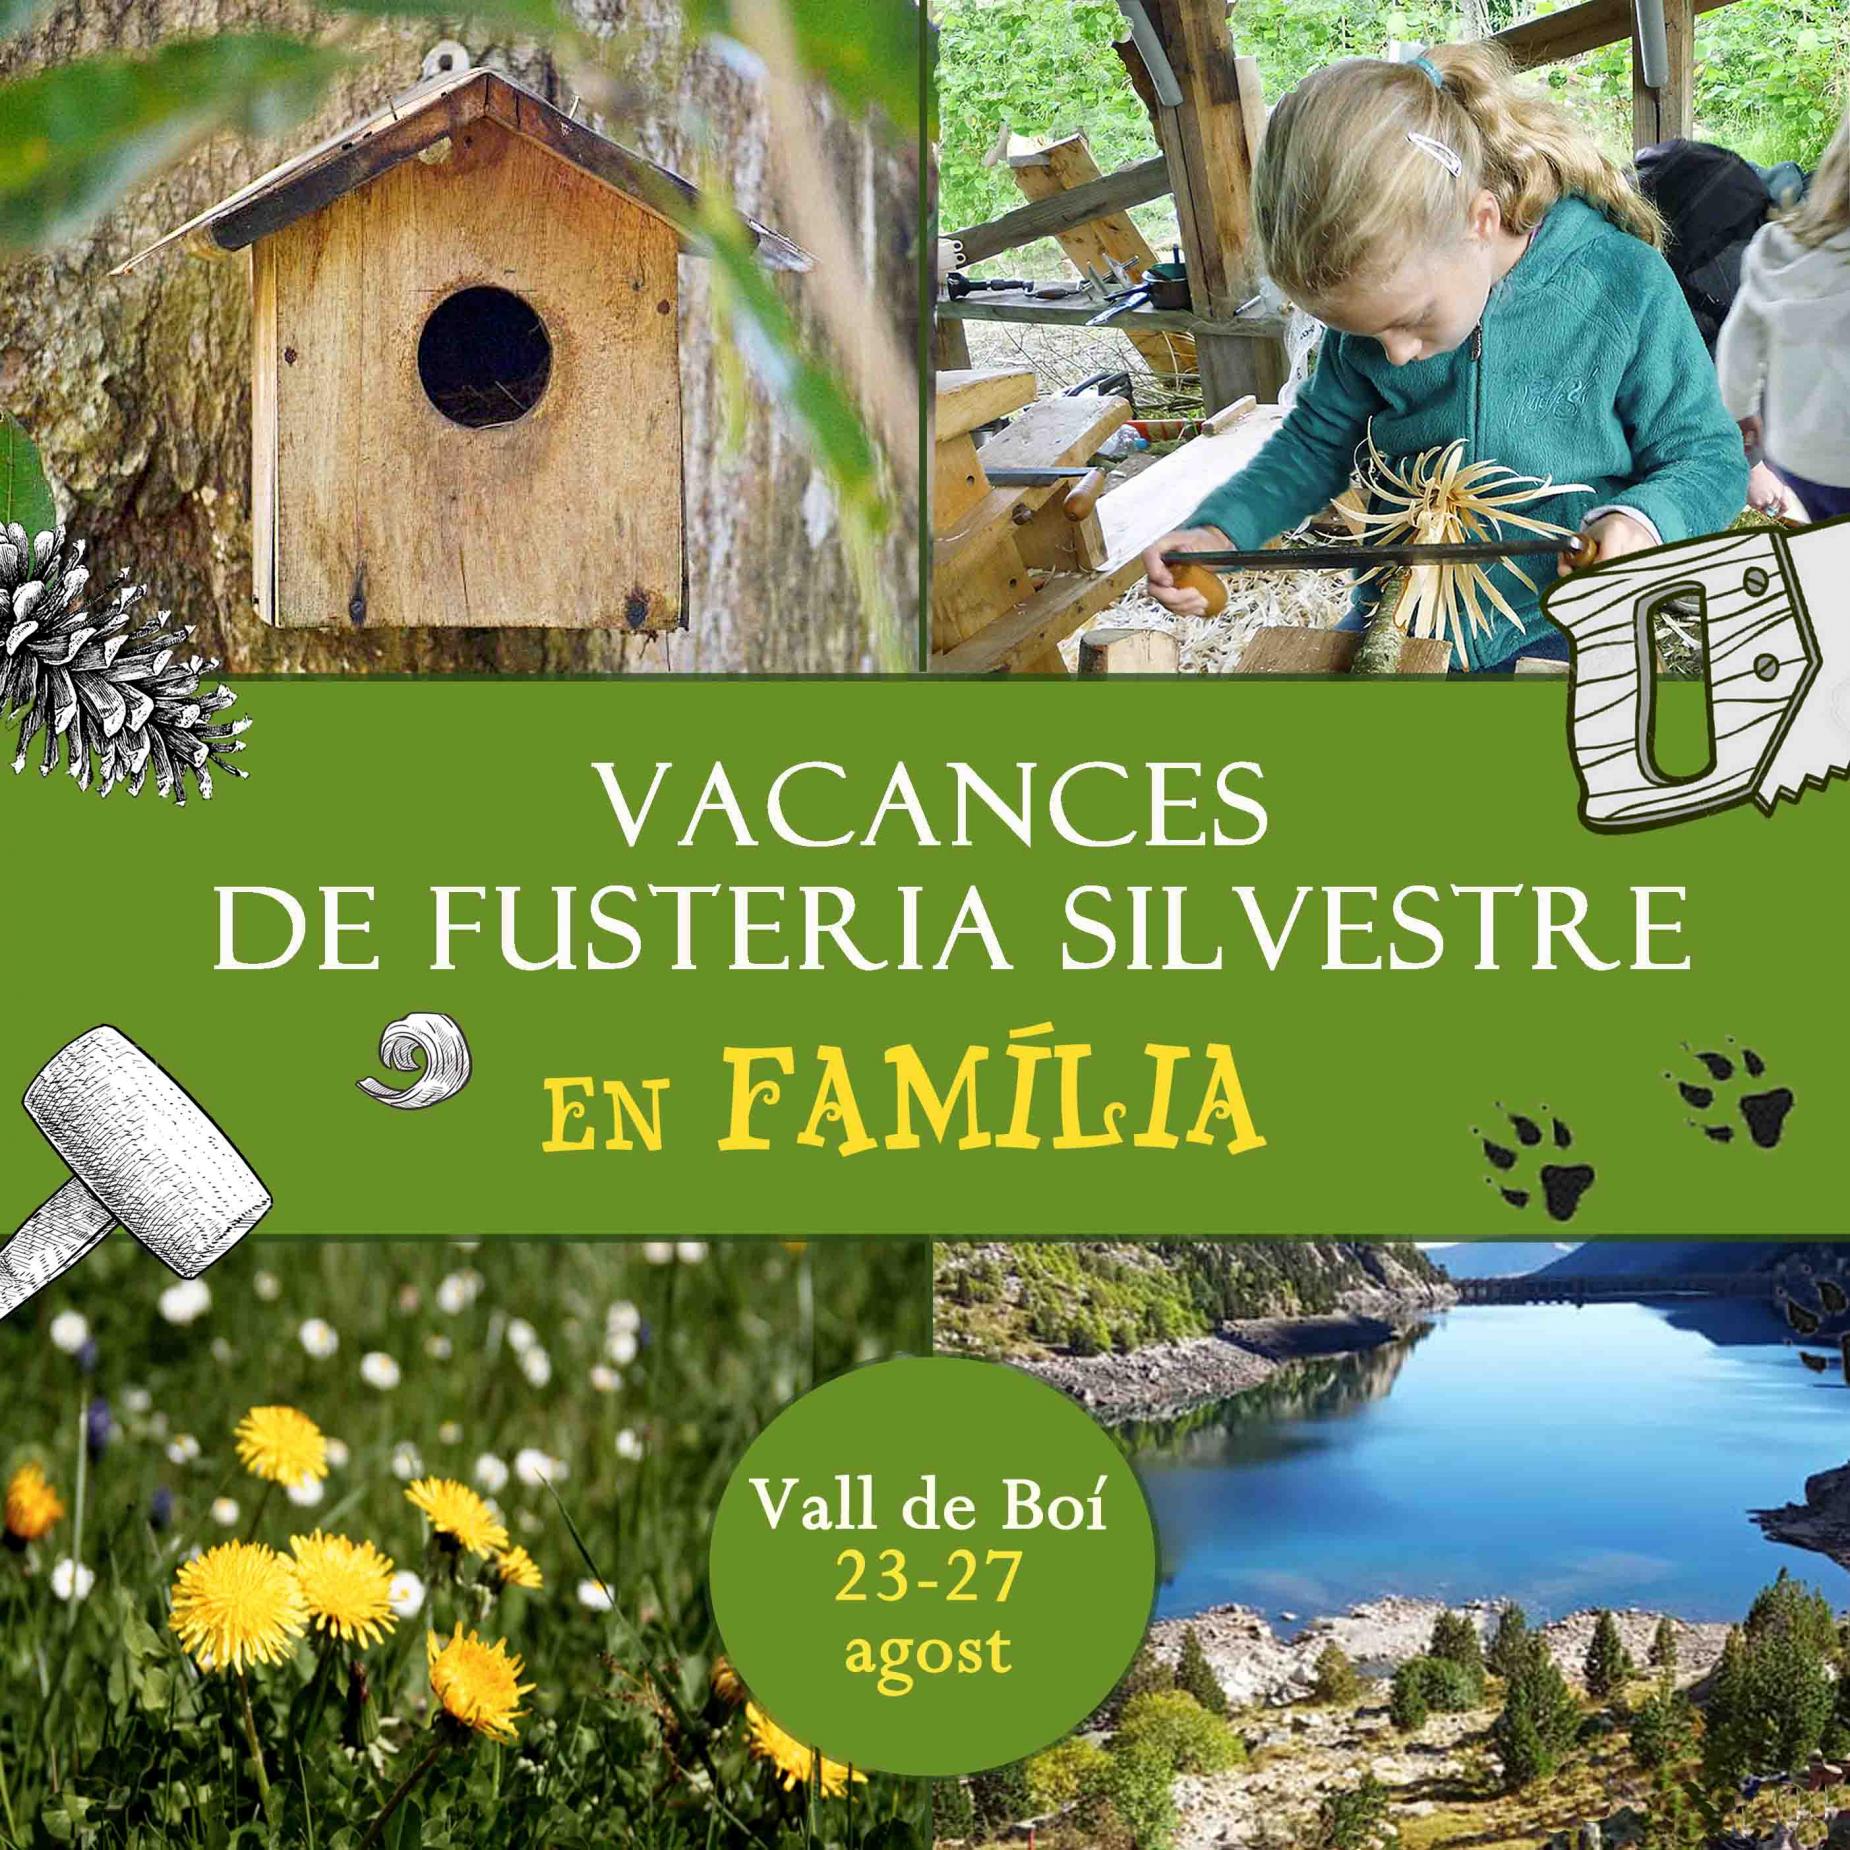 Vacances de fusteria silvestre en família Vall de Boí